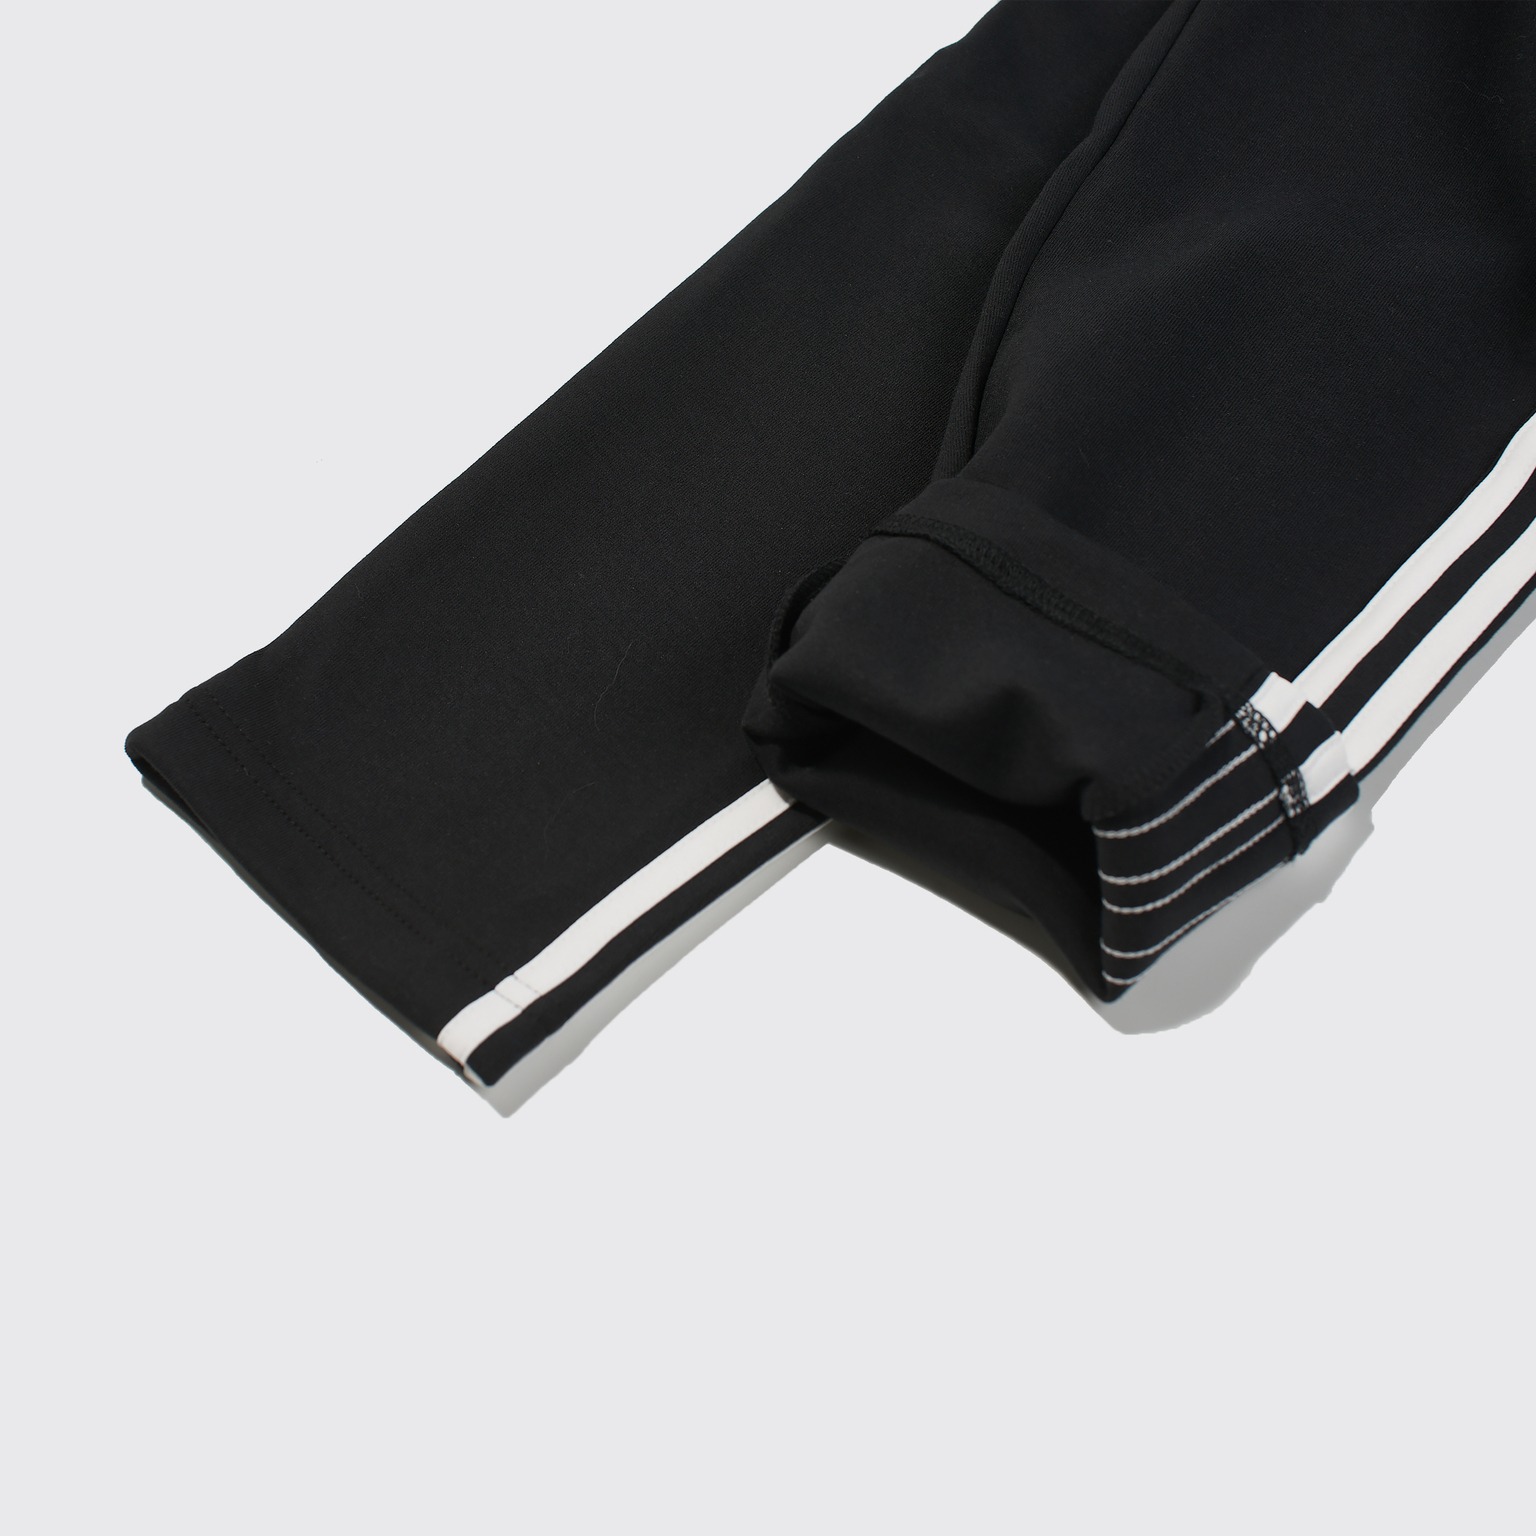 Quần Dài Chính Hãng - adidas Must Haves 3-Stripes Tapered Pants ''Black'' - FK6884